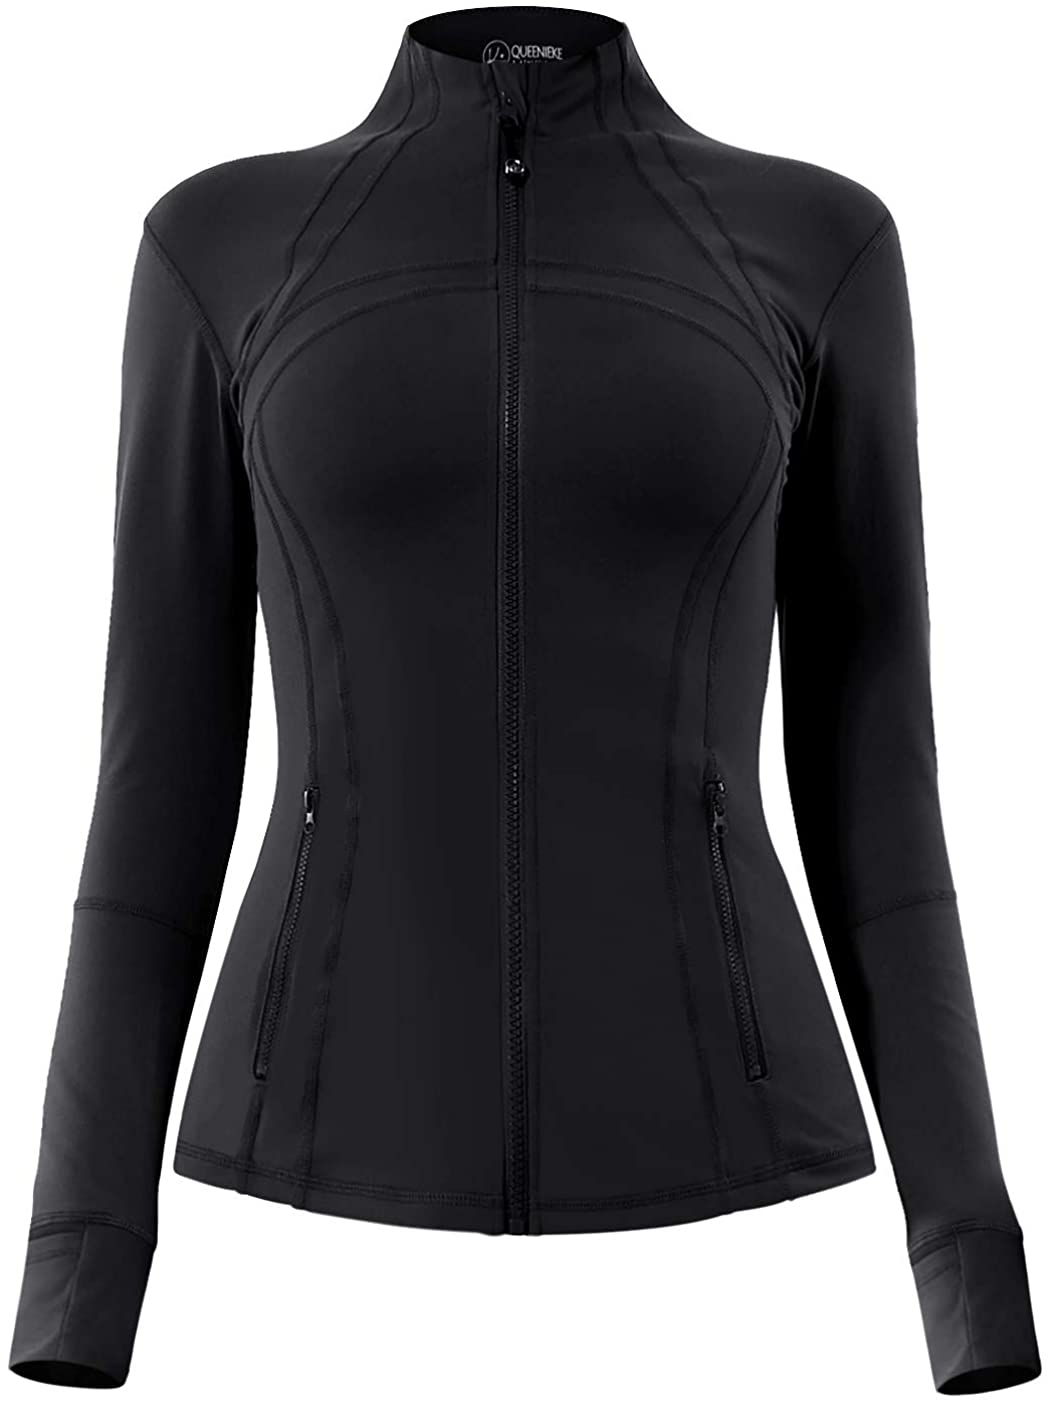 QUEENIEKE Women's Sports Jacket Slim Fit Running Jacket Cottony-Soft Handfeel 60927 